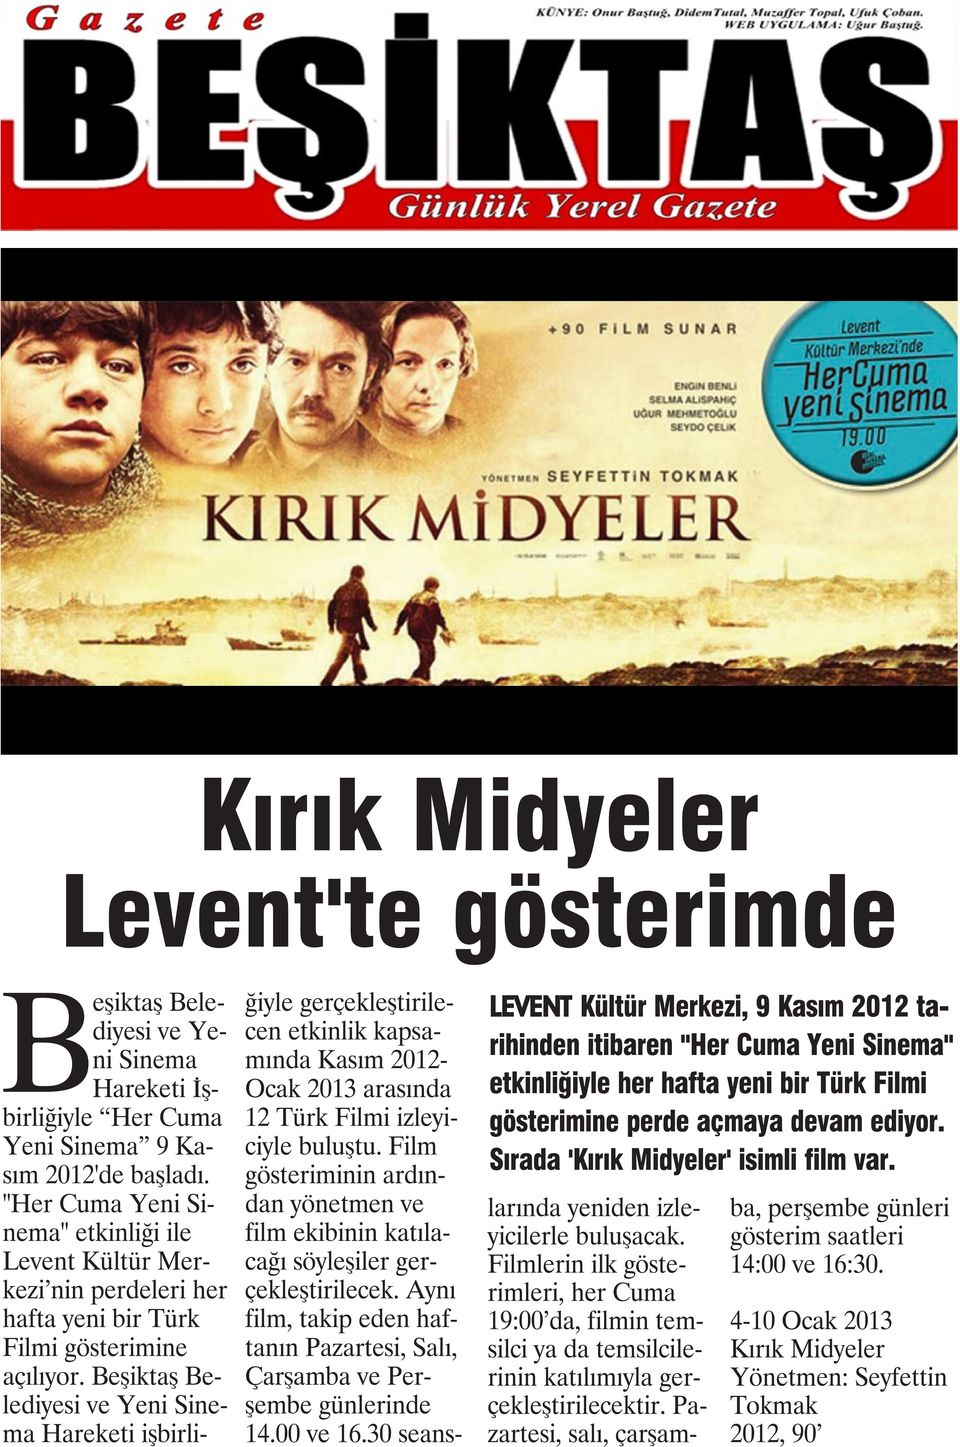 "Her Cuma Yeni Sinema" etkinliği ile Levent Kültür Merkezi nin perdeleri her hafta yeni bir Türk Filmi gösterimine açılıyor.